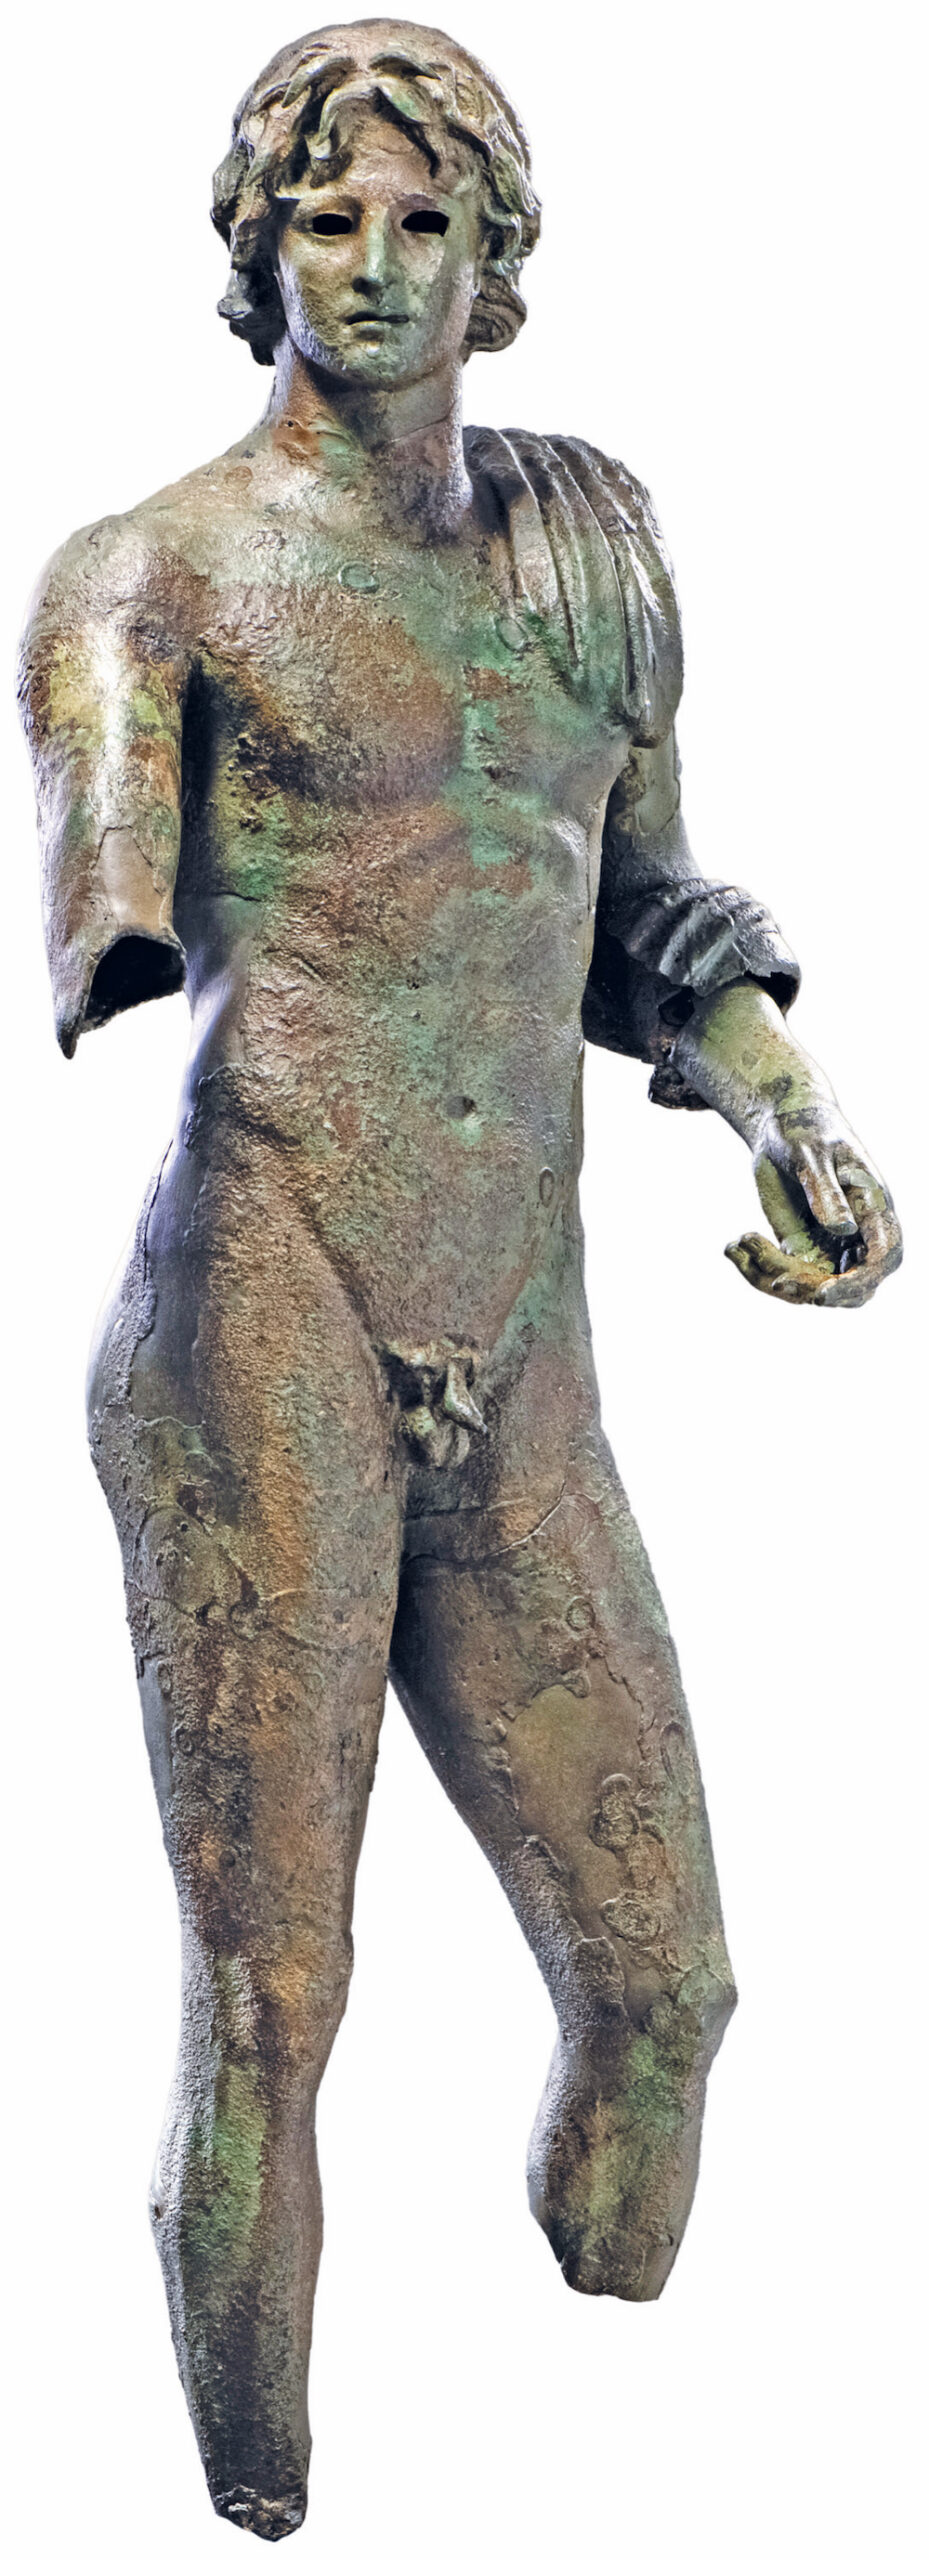 L’Éphèbe d’Agde, seul grand bronze hellénistique mis au jour dans les eaux françaises.